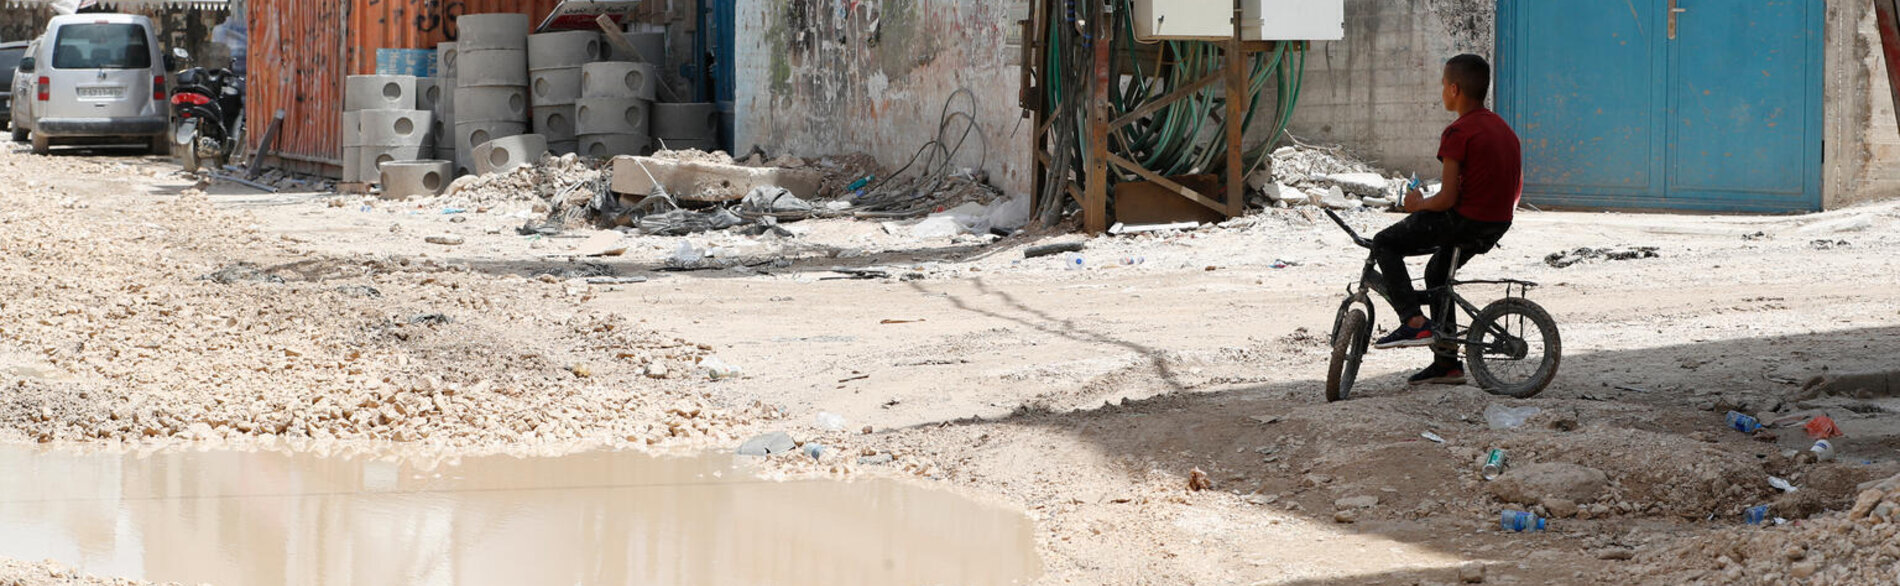 منطقة سكنية تعرضت فيها البنية التحتية لأضرار فادحة في مخيم جنين للاجئين في أعقاب عملية نفذتها القوات الإسرائيلية. تصوير اليونيسيف - دولة فلسطين/2024/علاء بدارنة، 25 أيار/مايو 2024